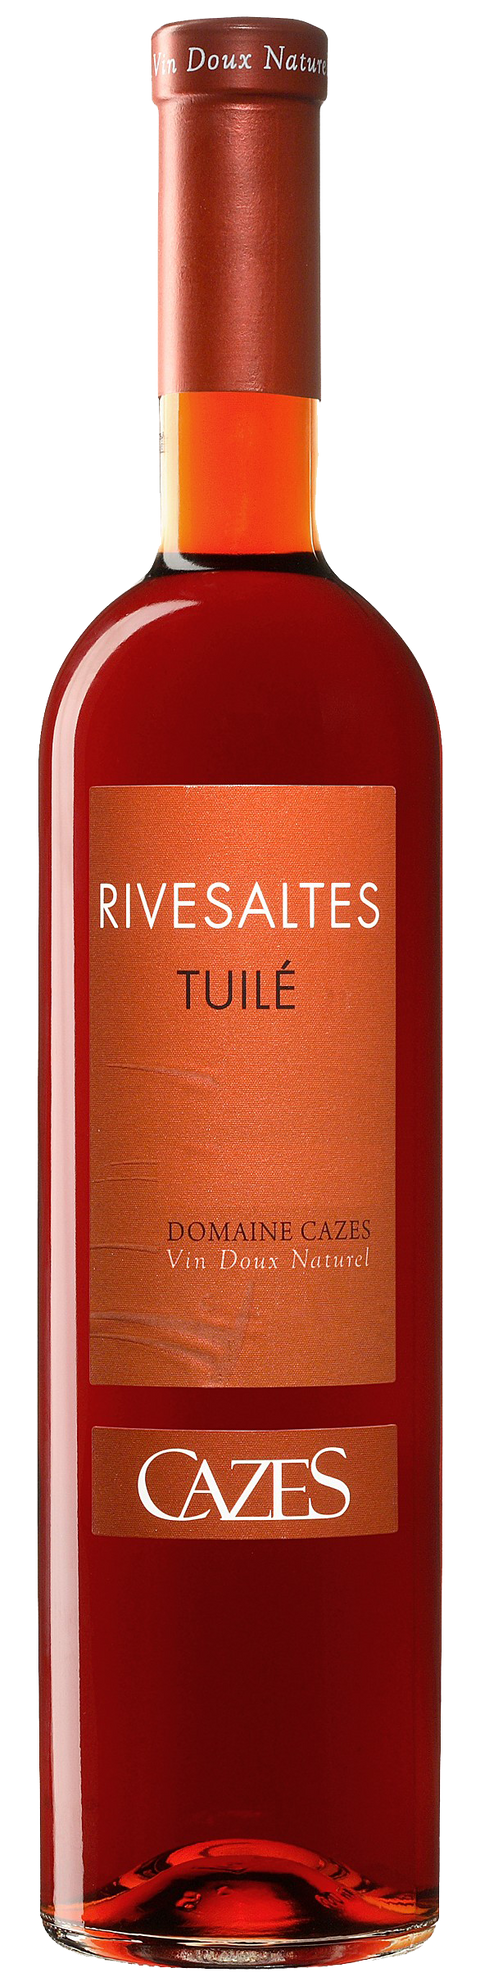 Rivesaltes Tuile---2007---Vins Doux Naturel---Cazes---0.75